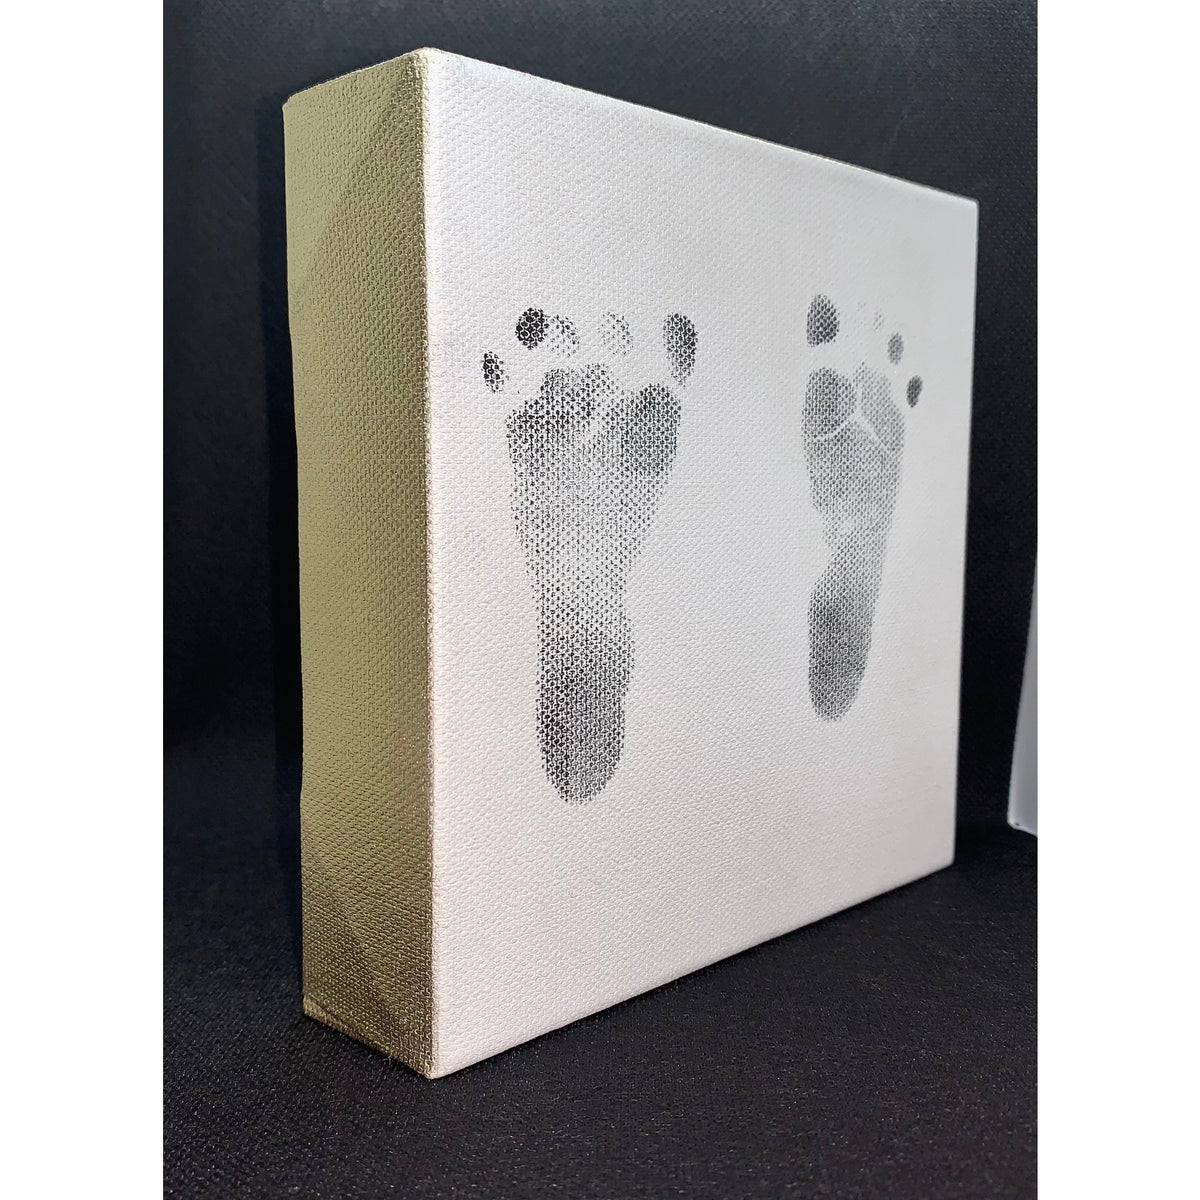 DIY Baby Footprint Kit – Next Deal Shop EU